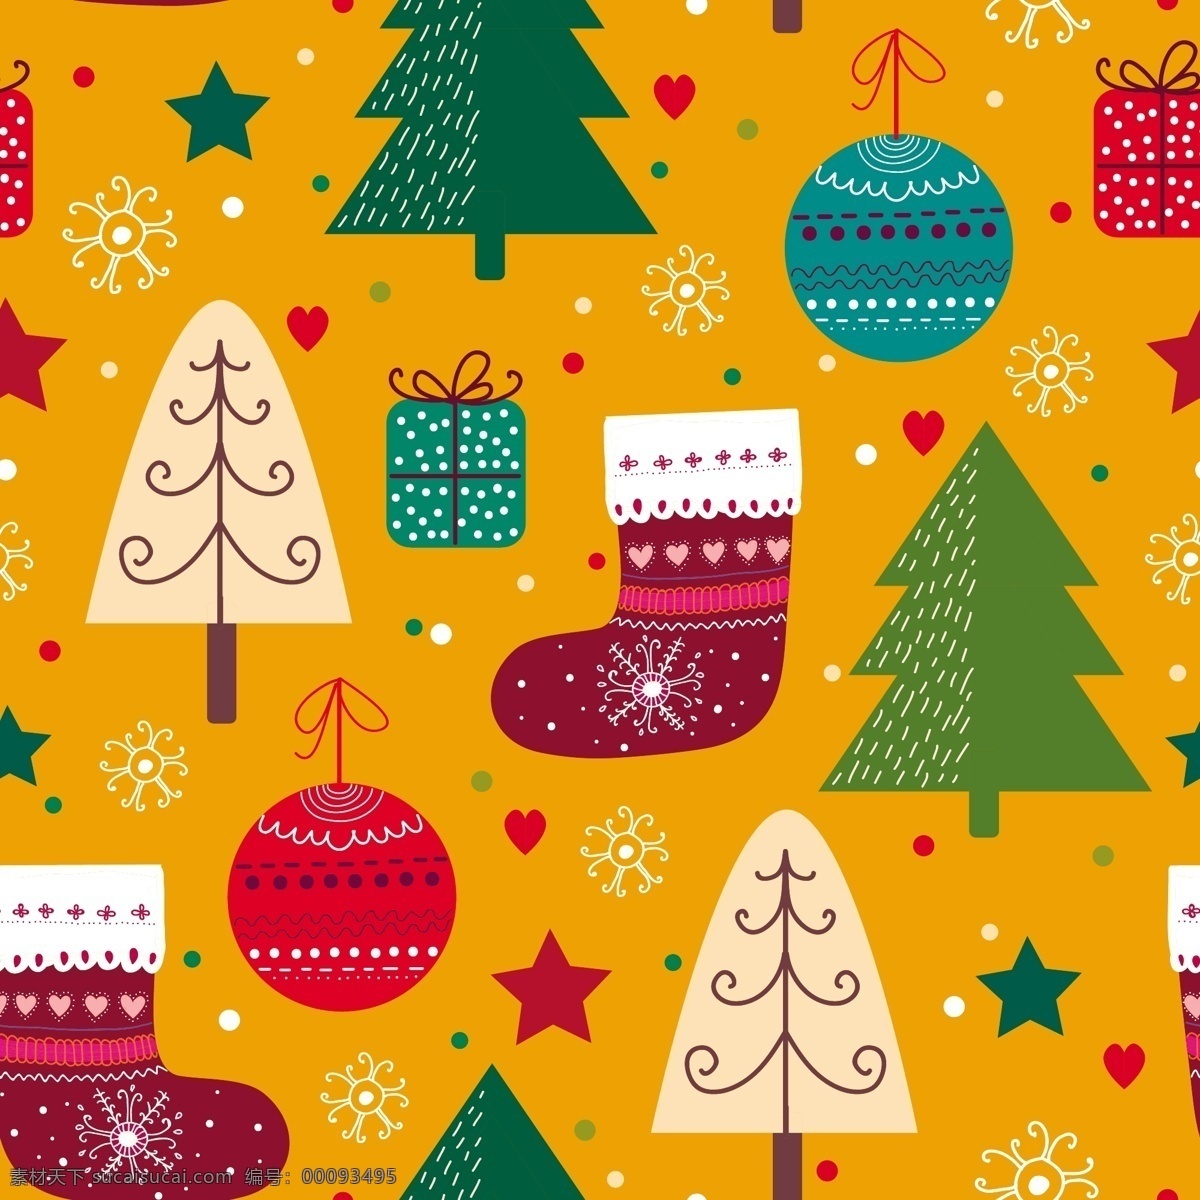 圣诞装饰图案 圣诞节 无缝背景 雪花 卡通圣诞树 圣诞袜 圣诞礼物 圣诞海报背景 2015 年 新年 羊年 文化艺术 节日庆祝 矢量